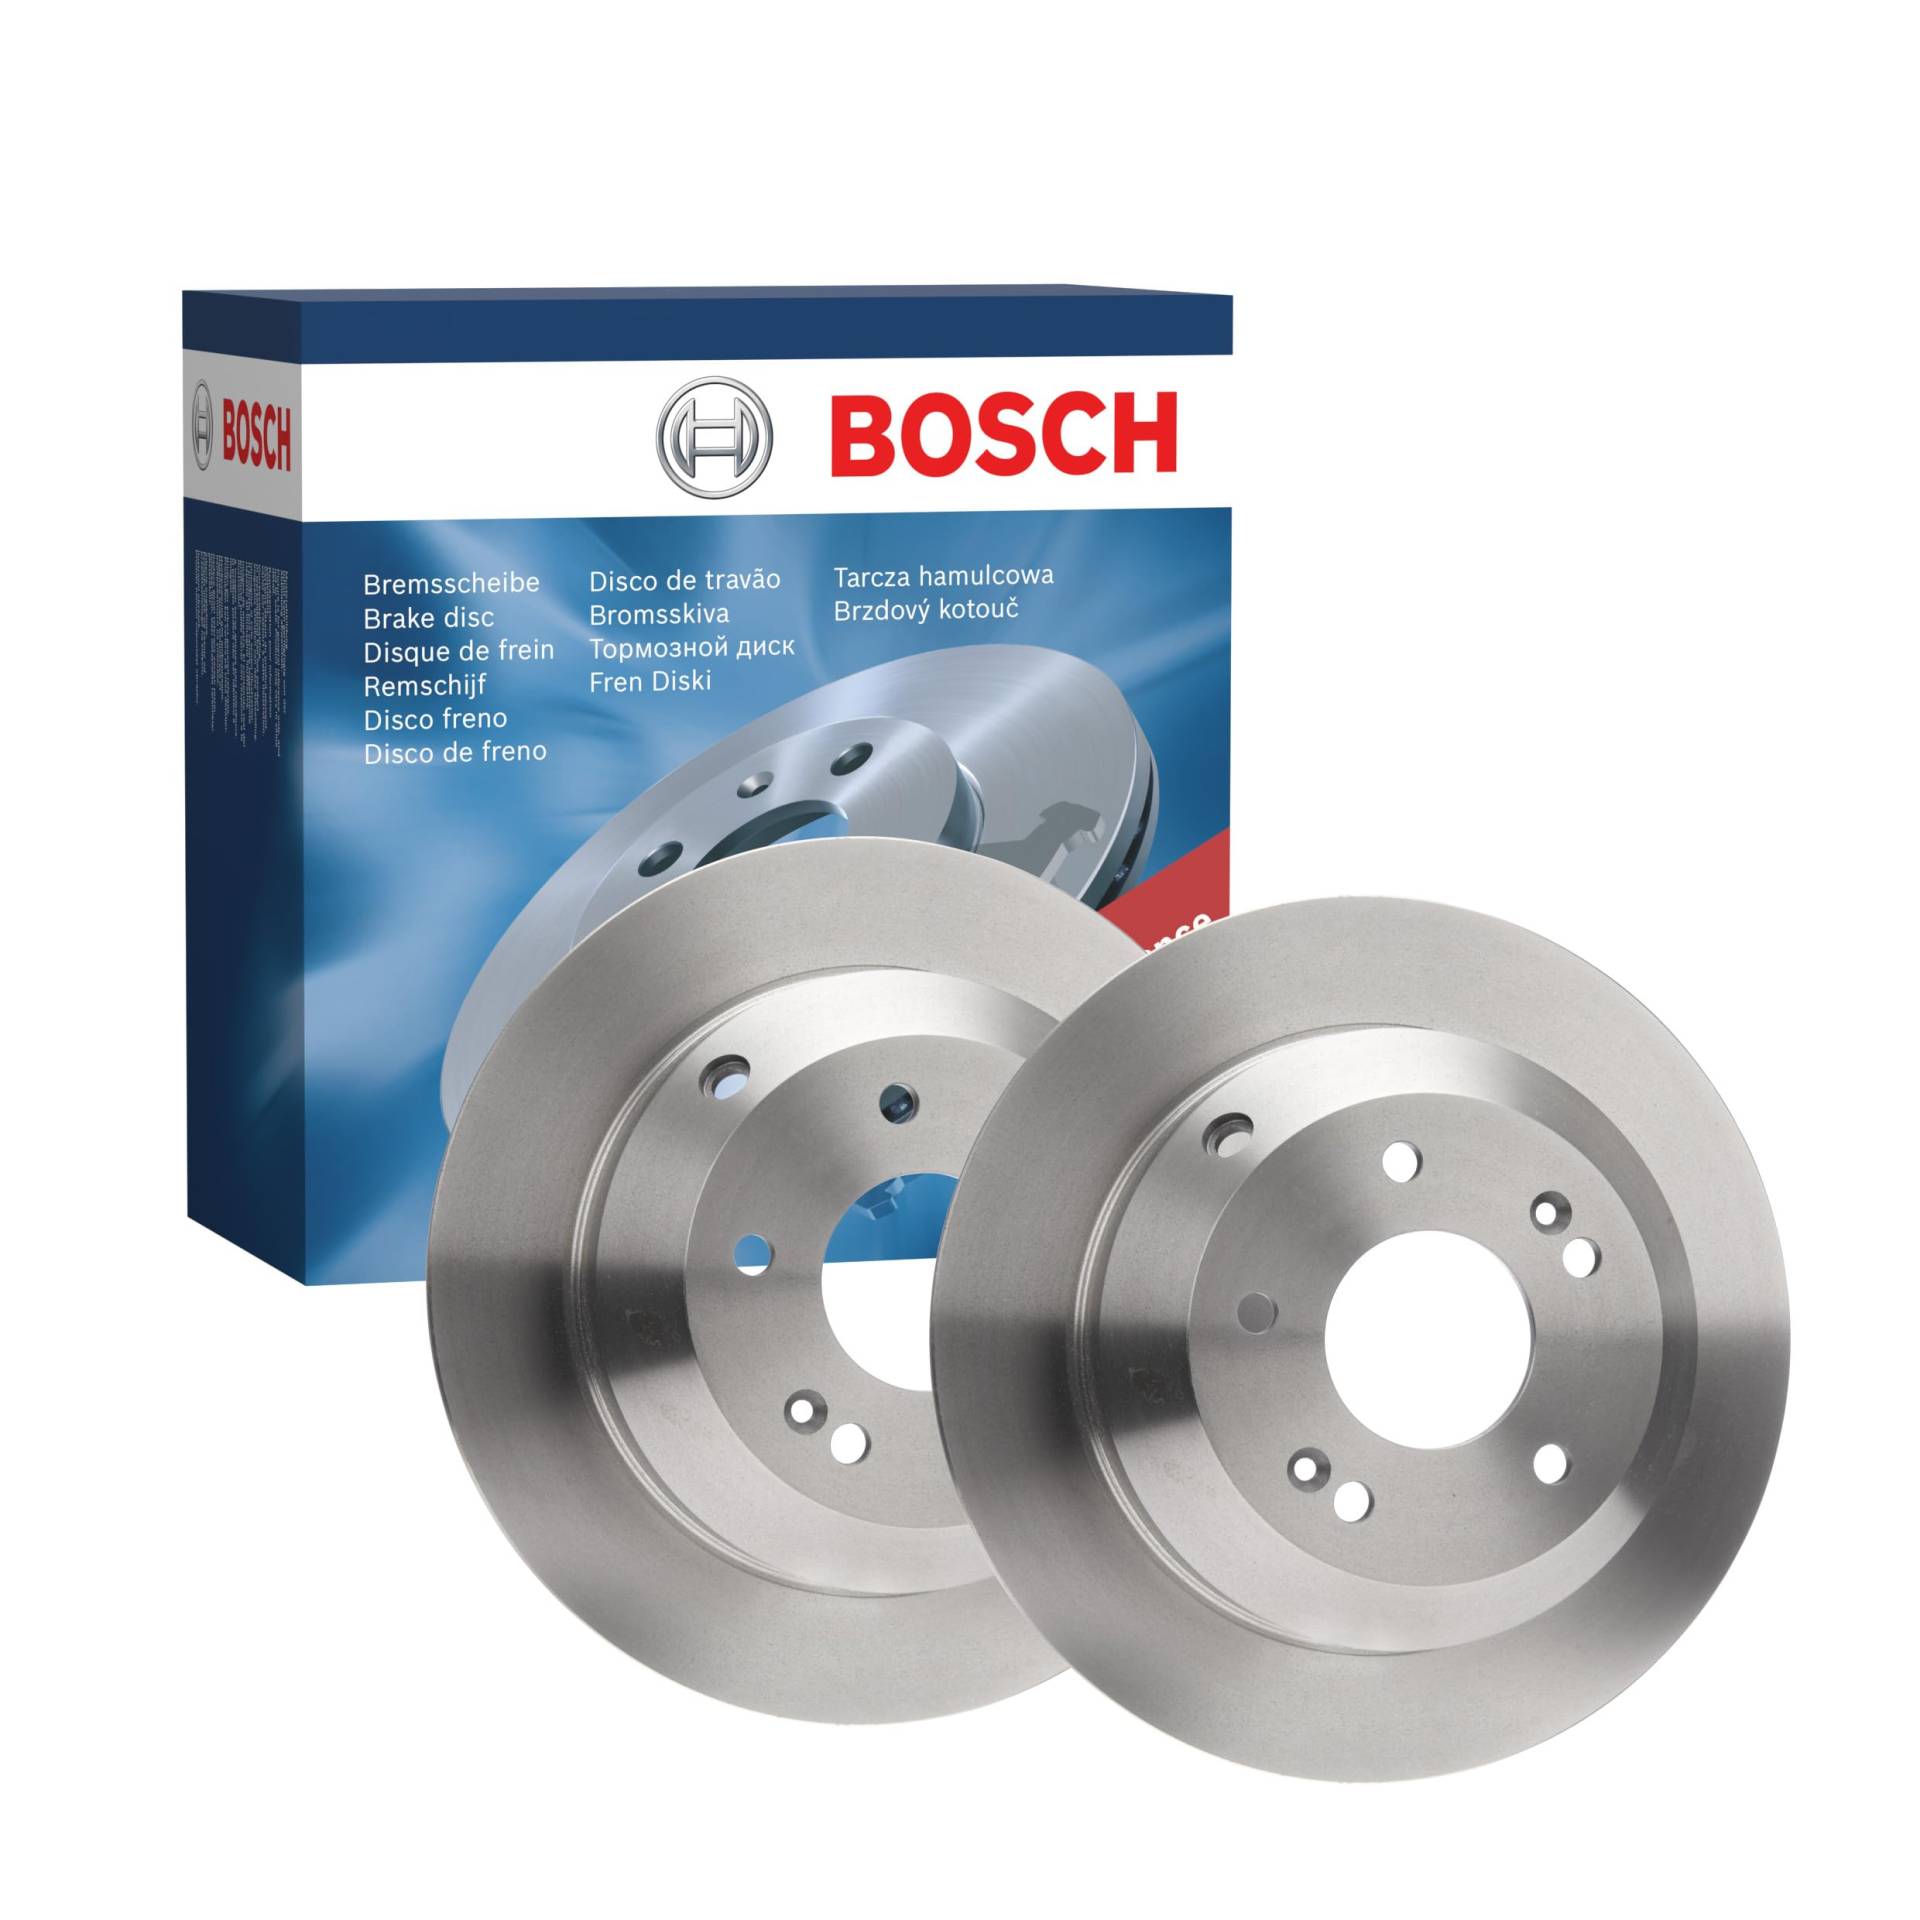 Bosch BD1652 Bremsscheiben - Hinterachse - ECE-R90 Zertifizierung - zwei Bremsscheiben pro Set von Bosch Automotive